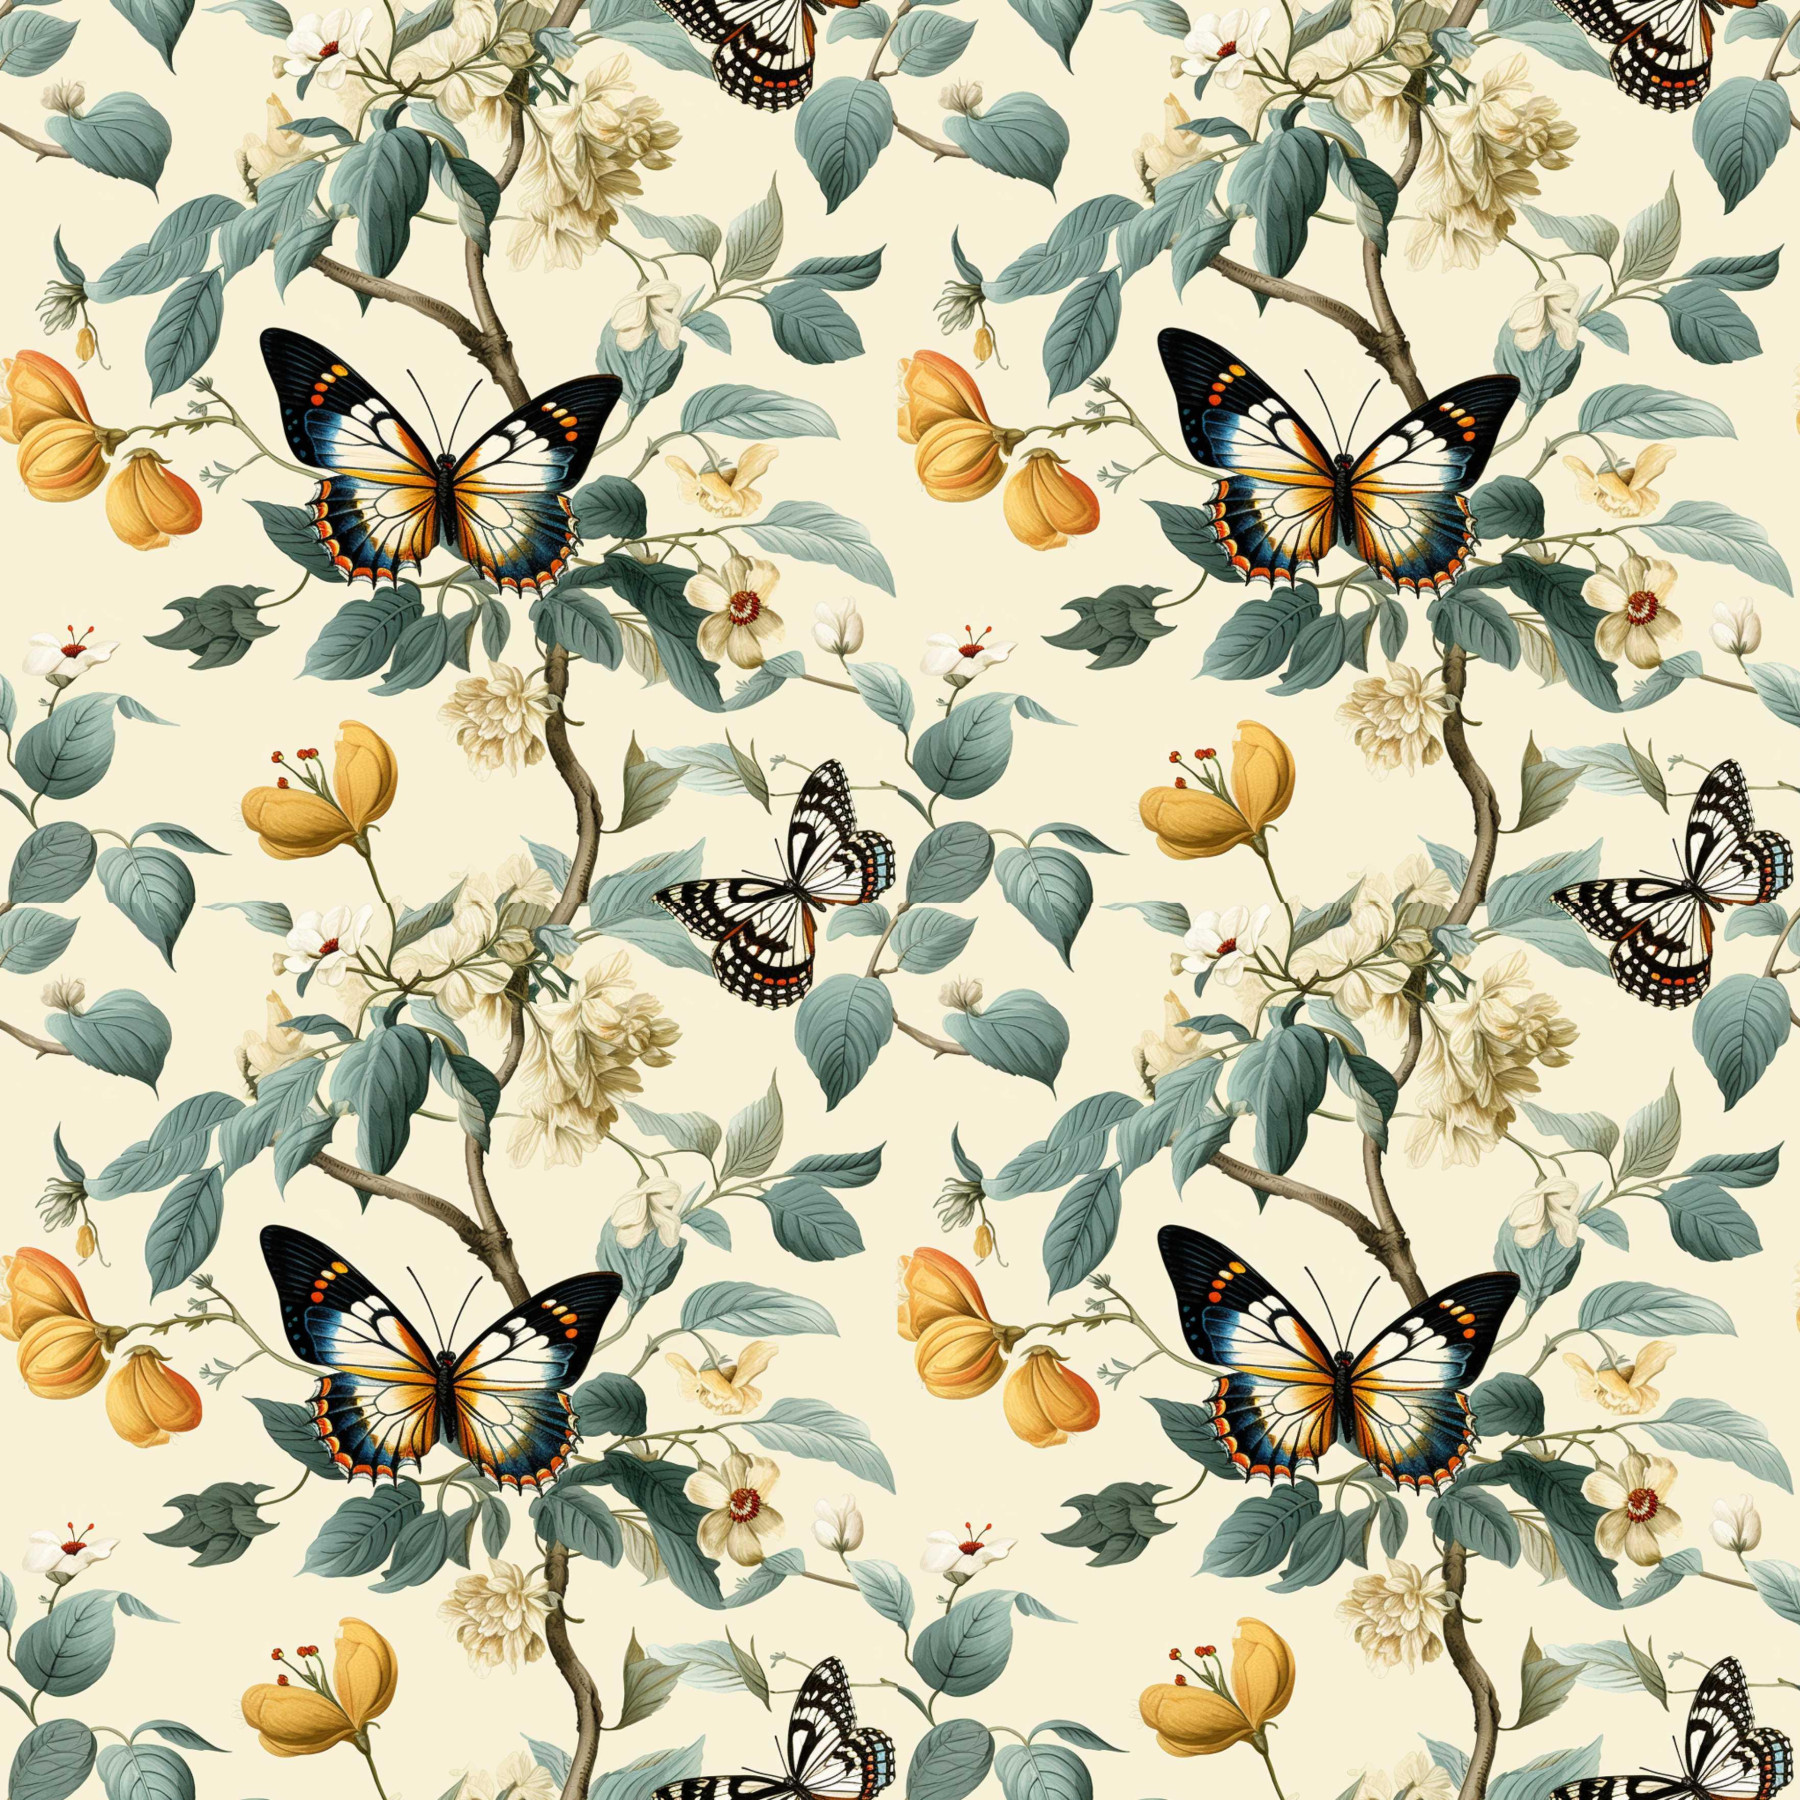 Butterfly & Flowers wz.2 - Cotton muslin